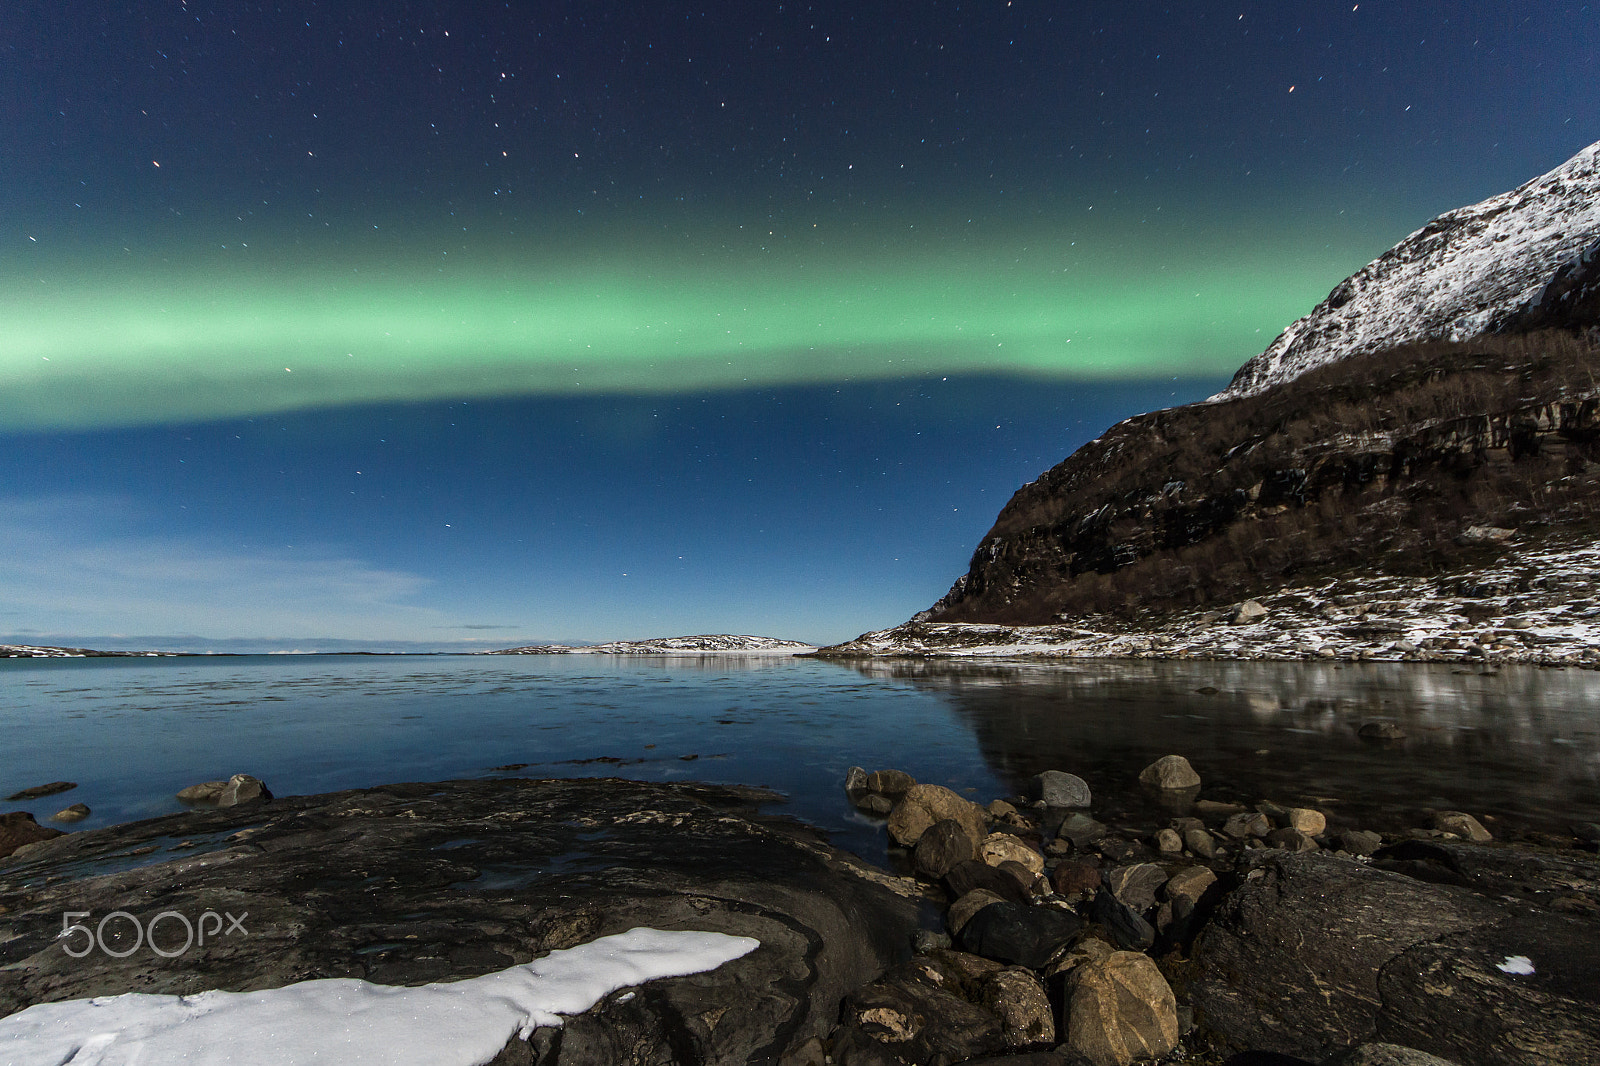 Canon EOS 7D sample photo. Aurora borealis photography